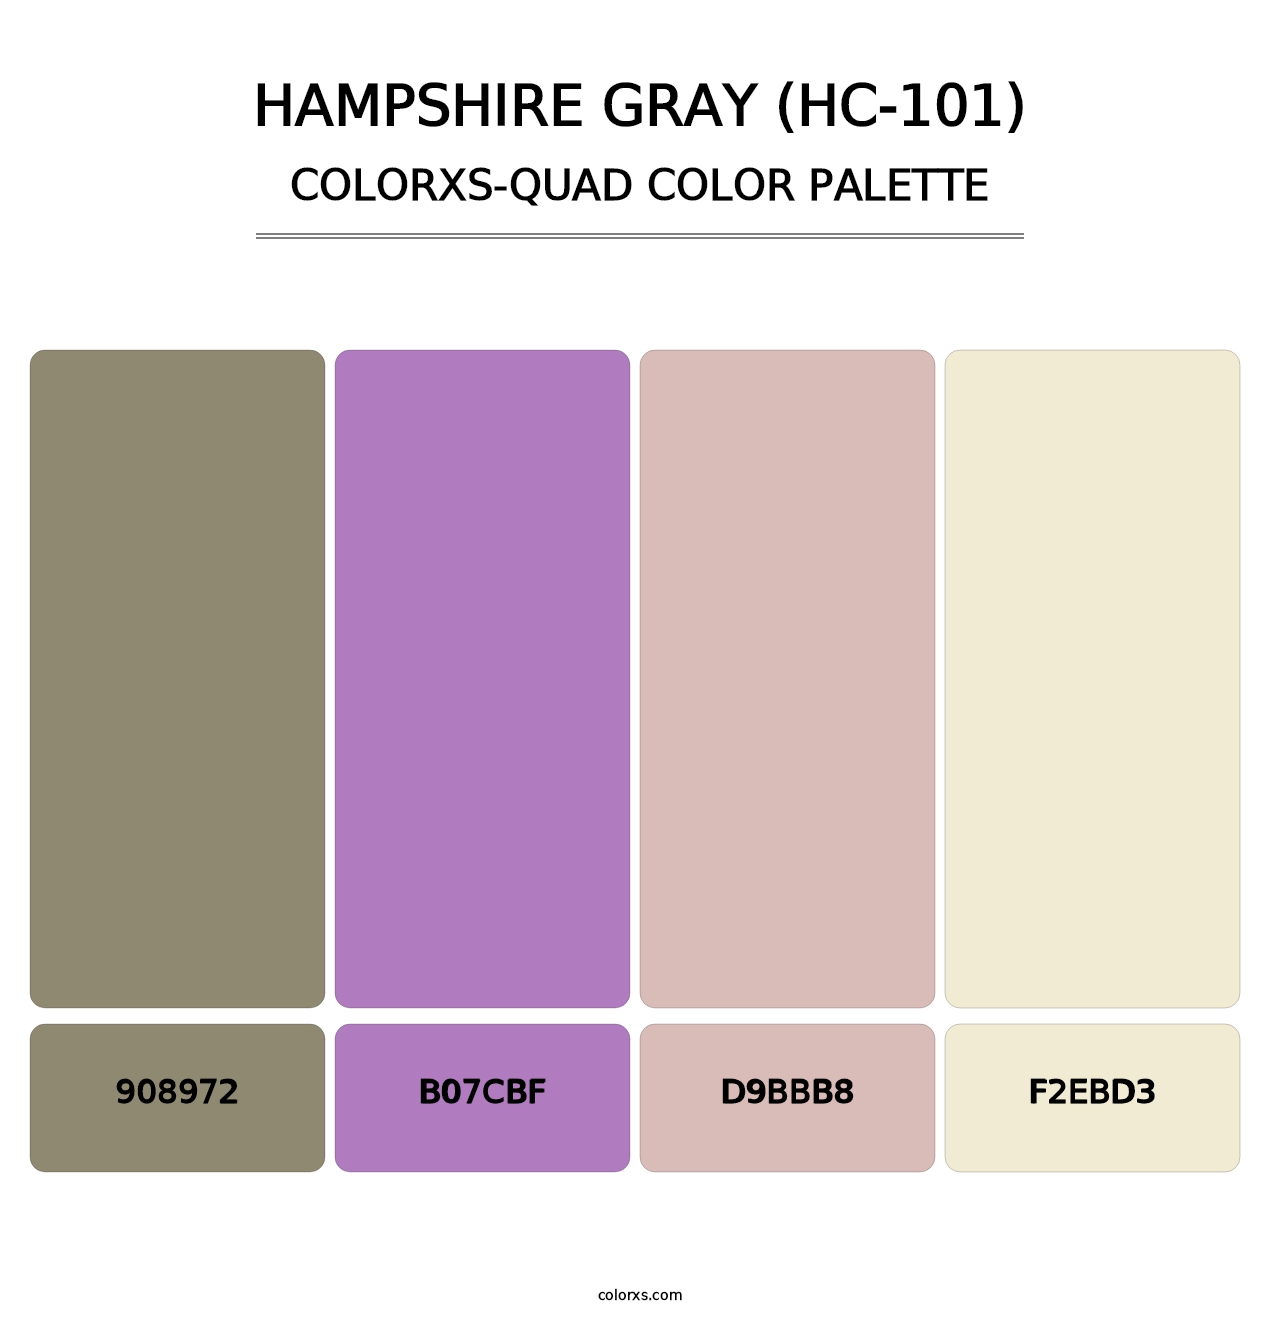 Hampshire Gray (HC-101) - Colorxs Quad Palette